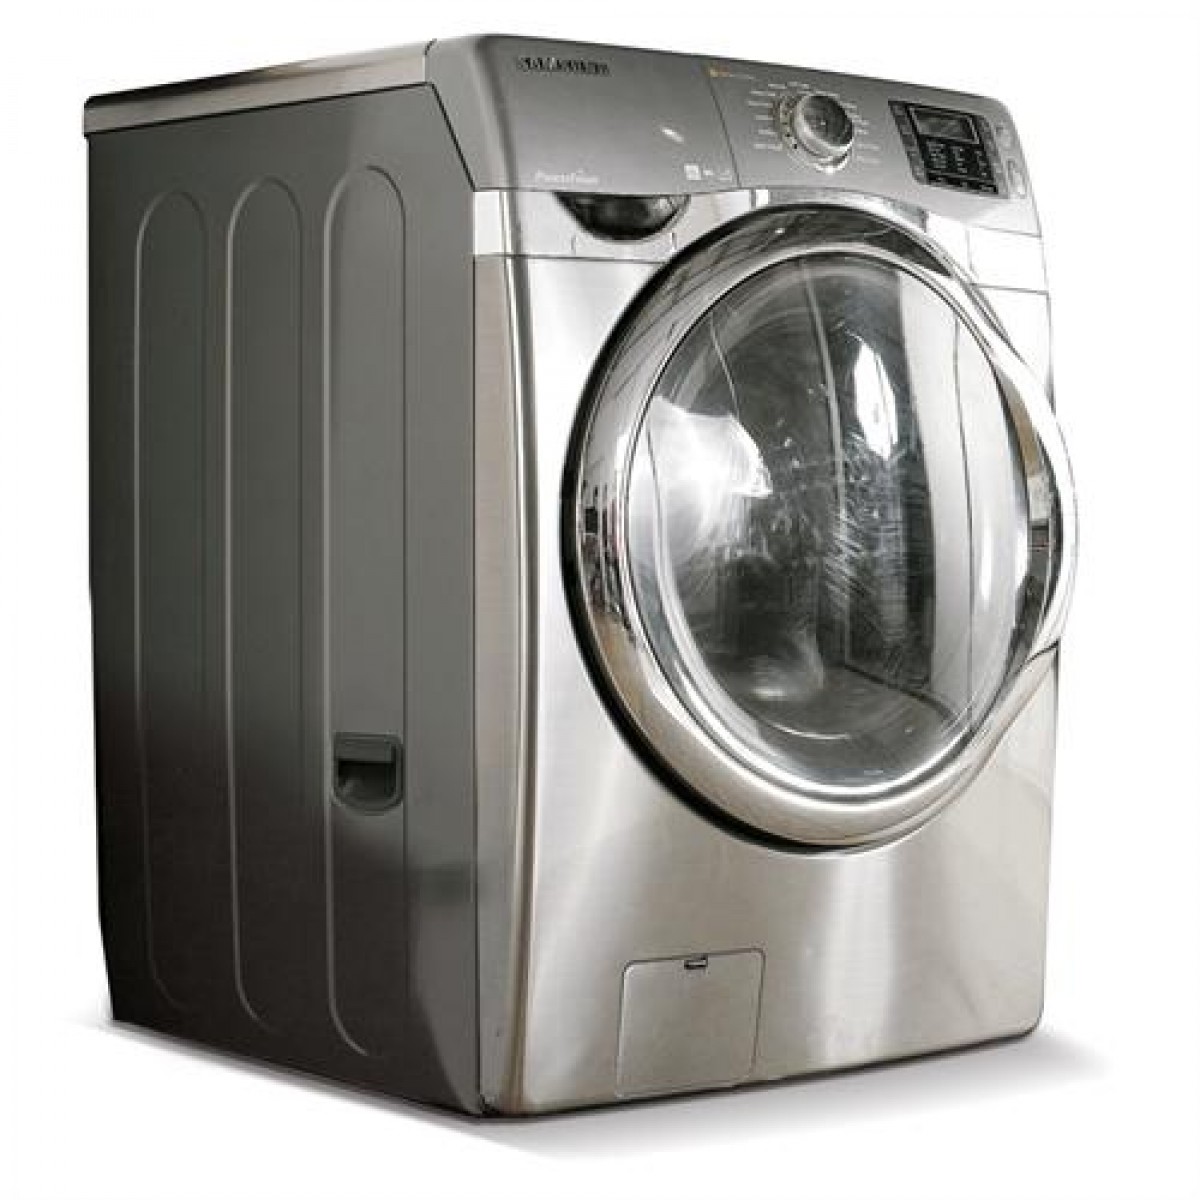 Washing Machines & Dryers